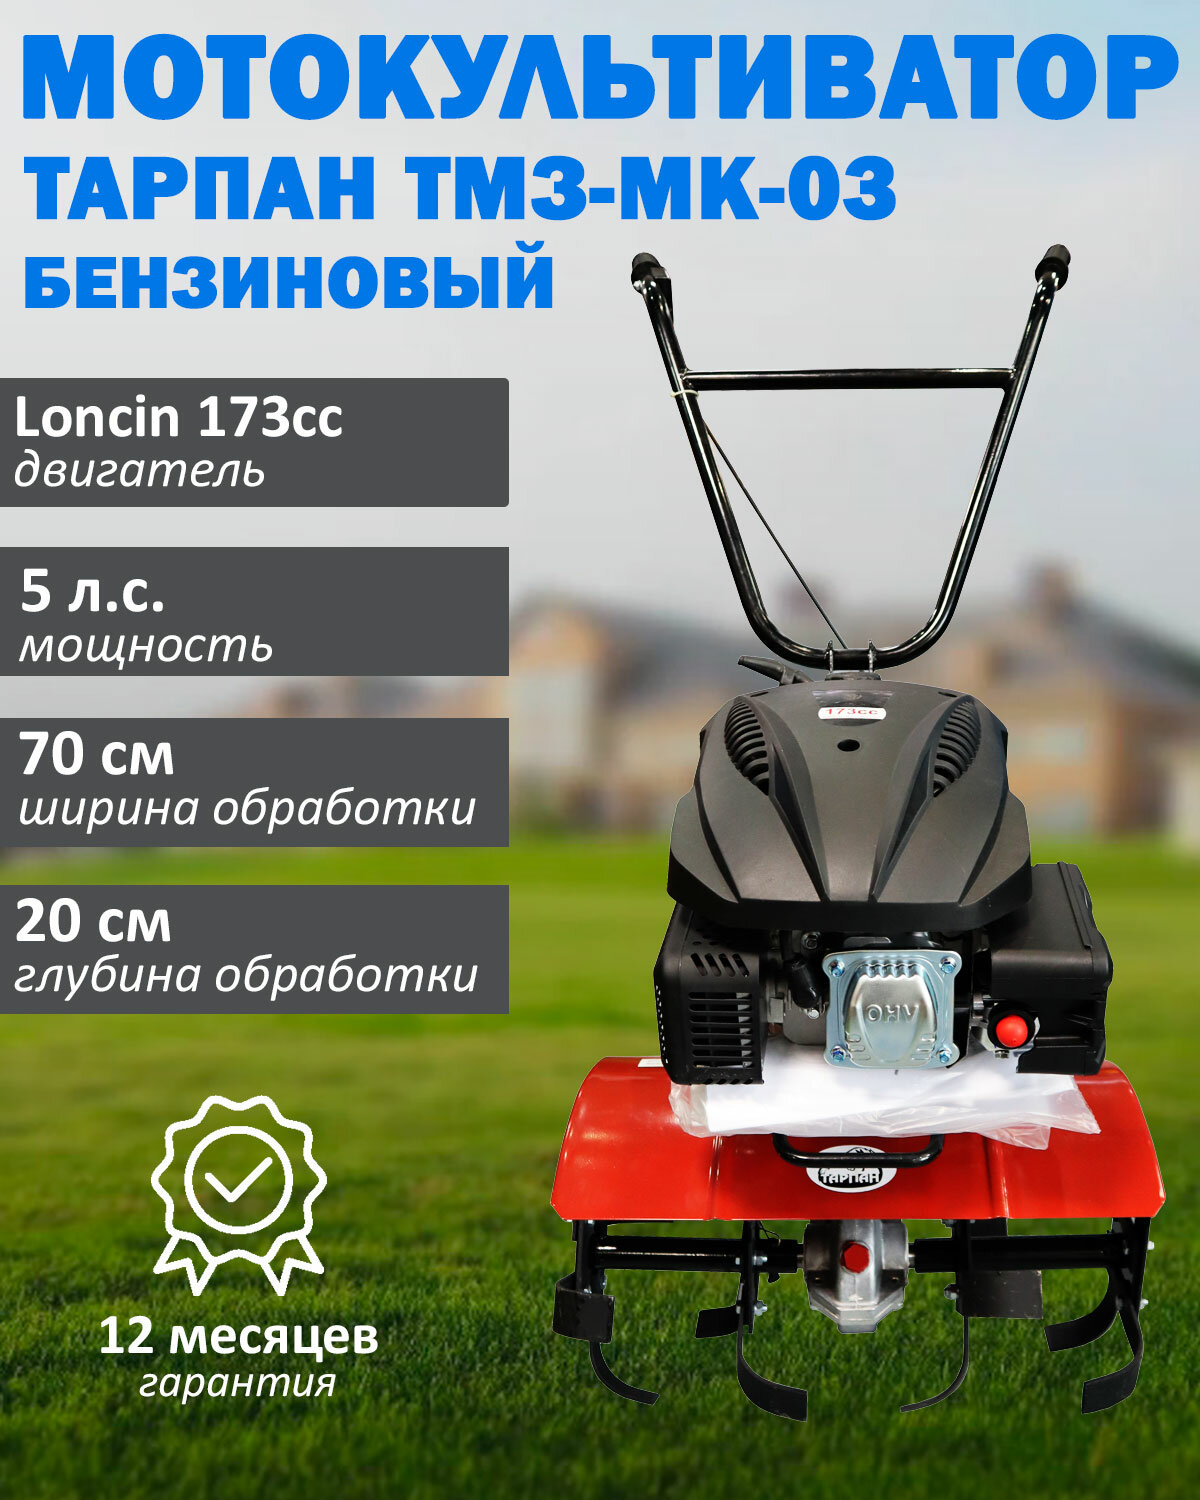 Мотокультиватор бензиновый Тарпан ТМЗ-МК-03 с двигателем Loncin 173cc мощность 5 л. с объем 173 куб. см